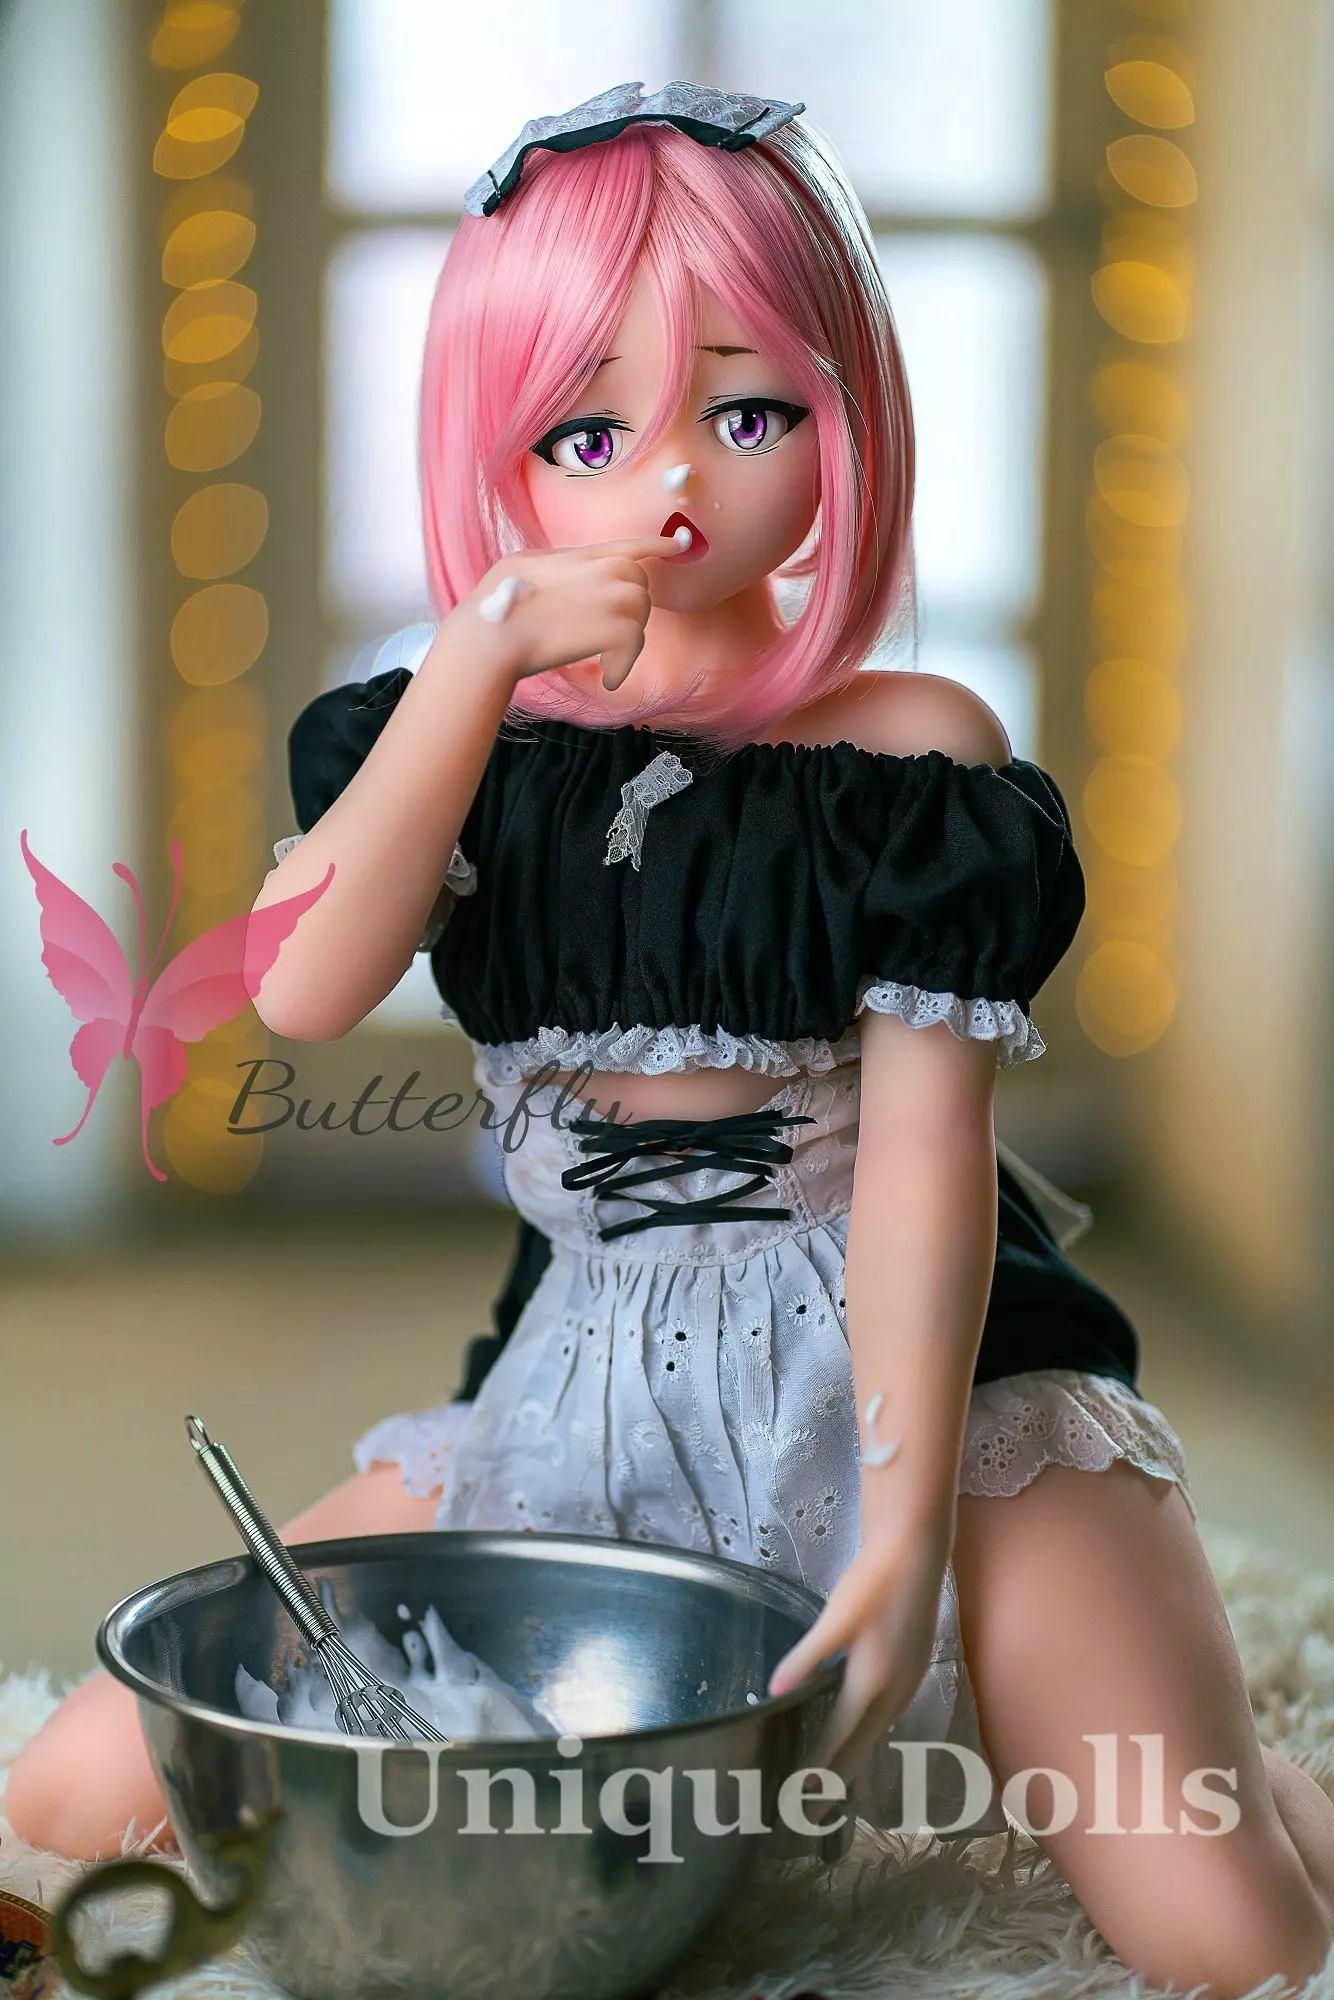 Butterfly Doll 80cm Anime cute sex doll with head#Jana